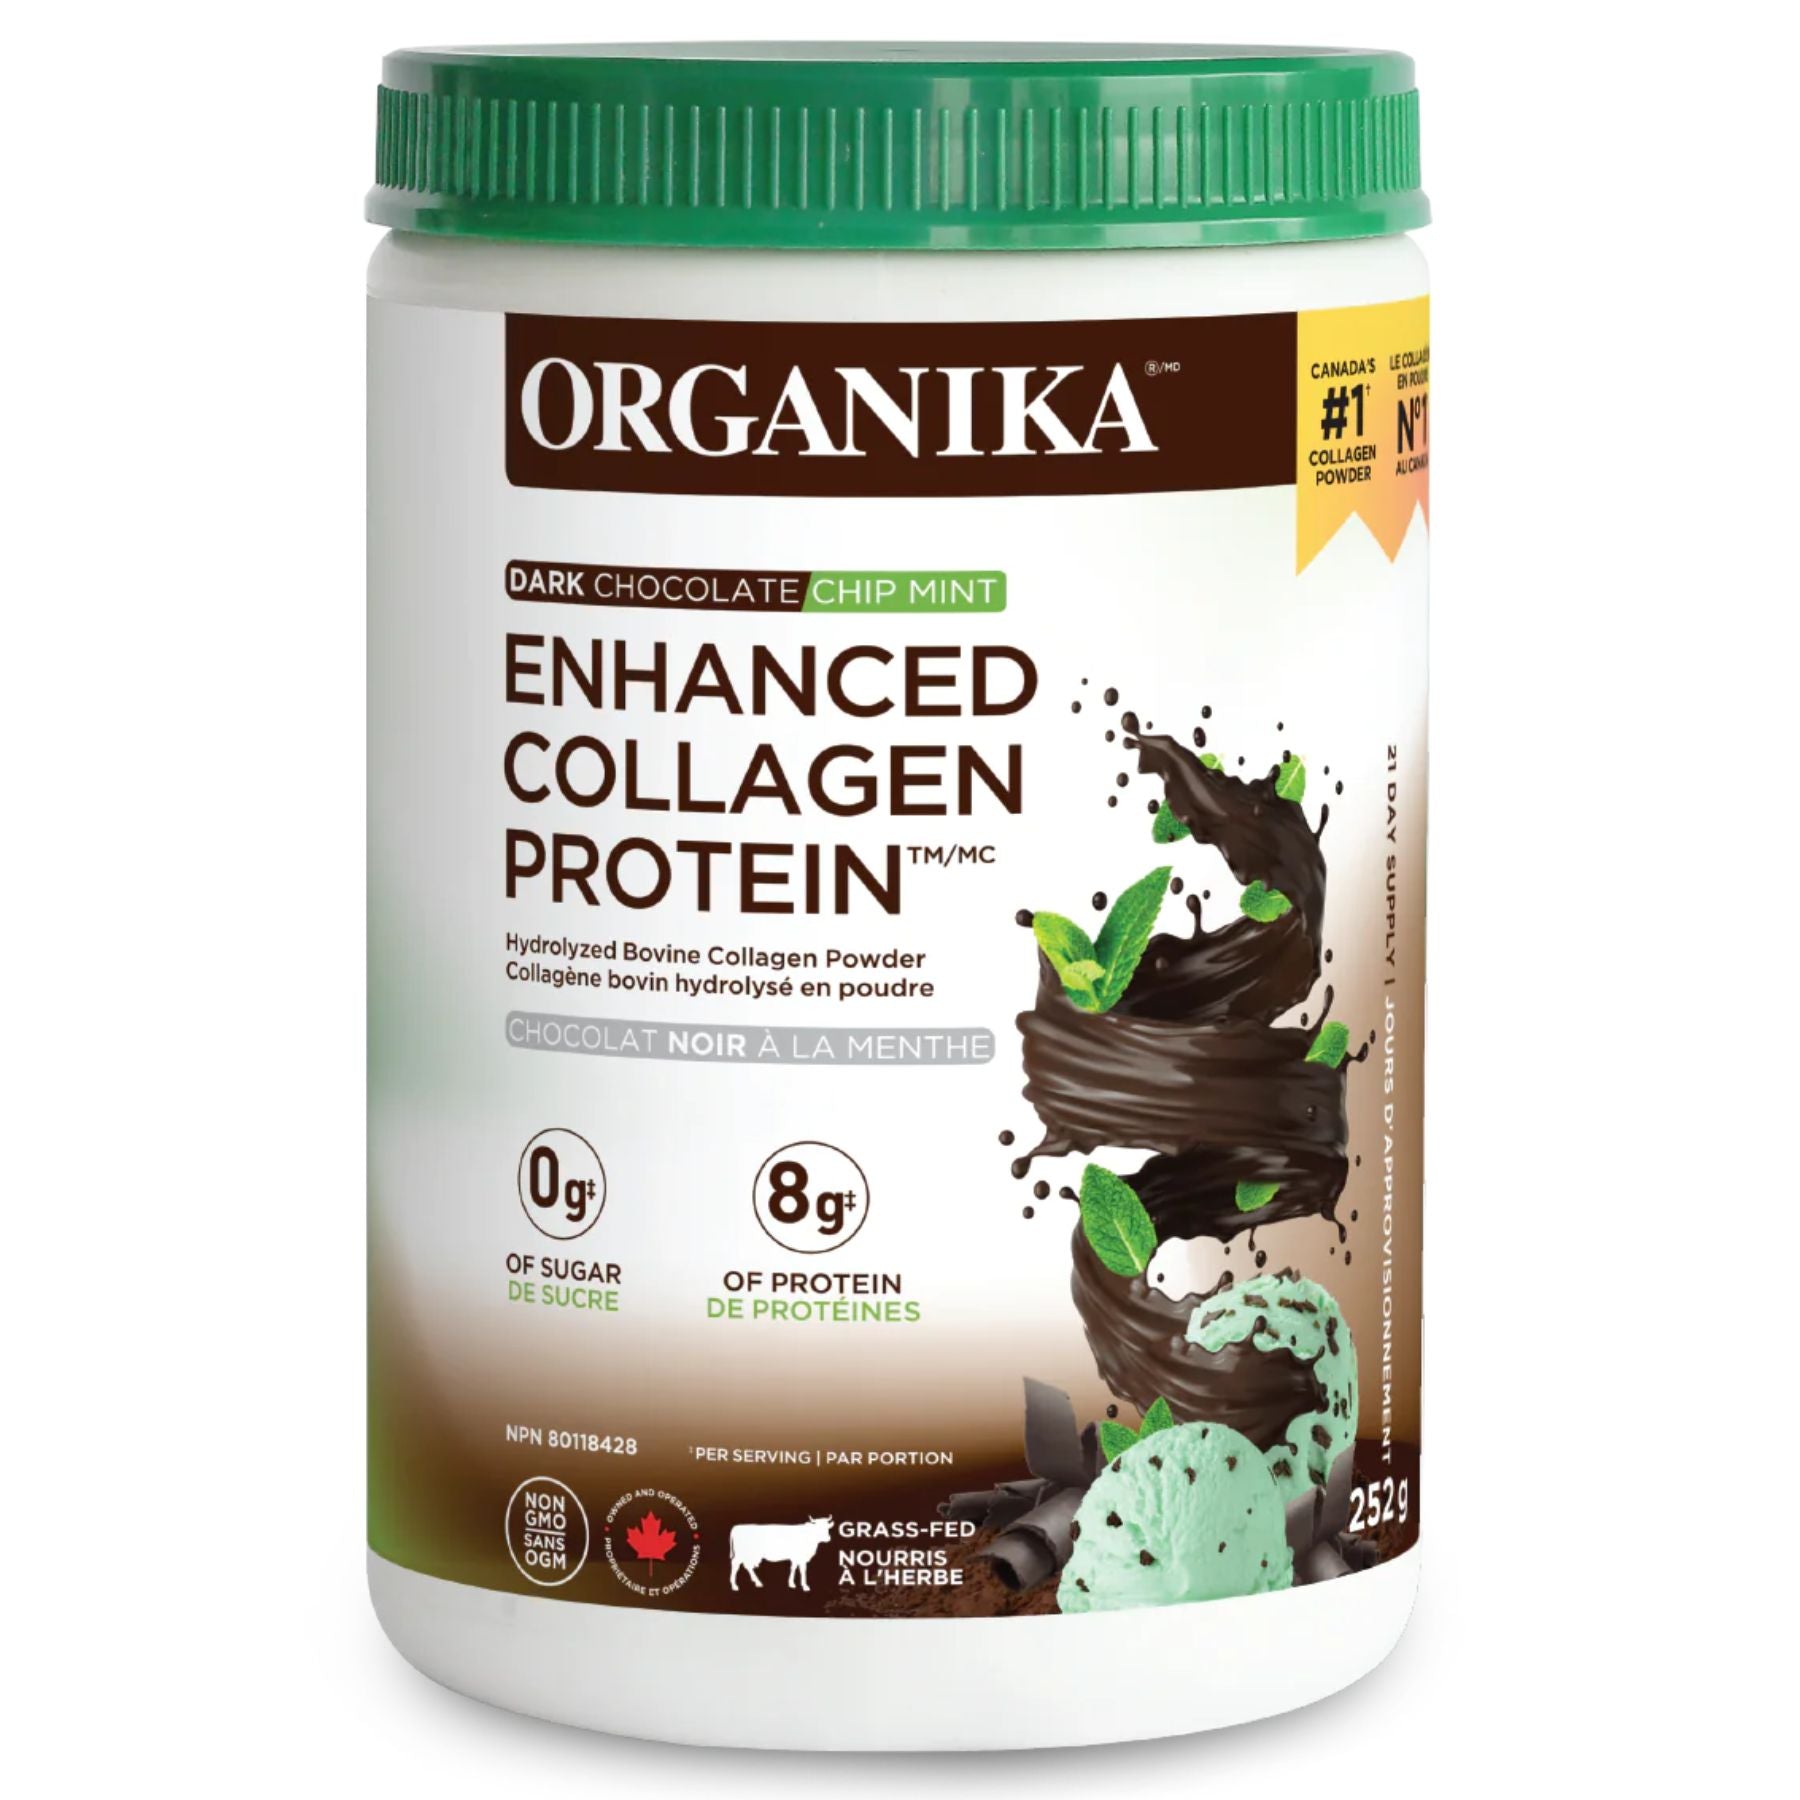 Organika Enhanced Collagen Protein - Dark Chocolate Mint Chip 252g